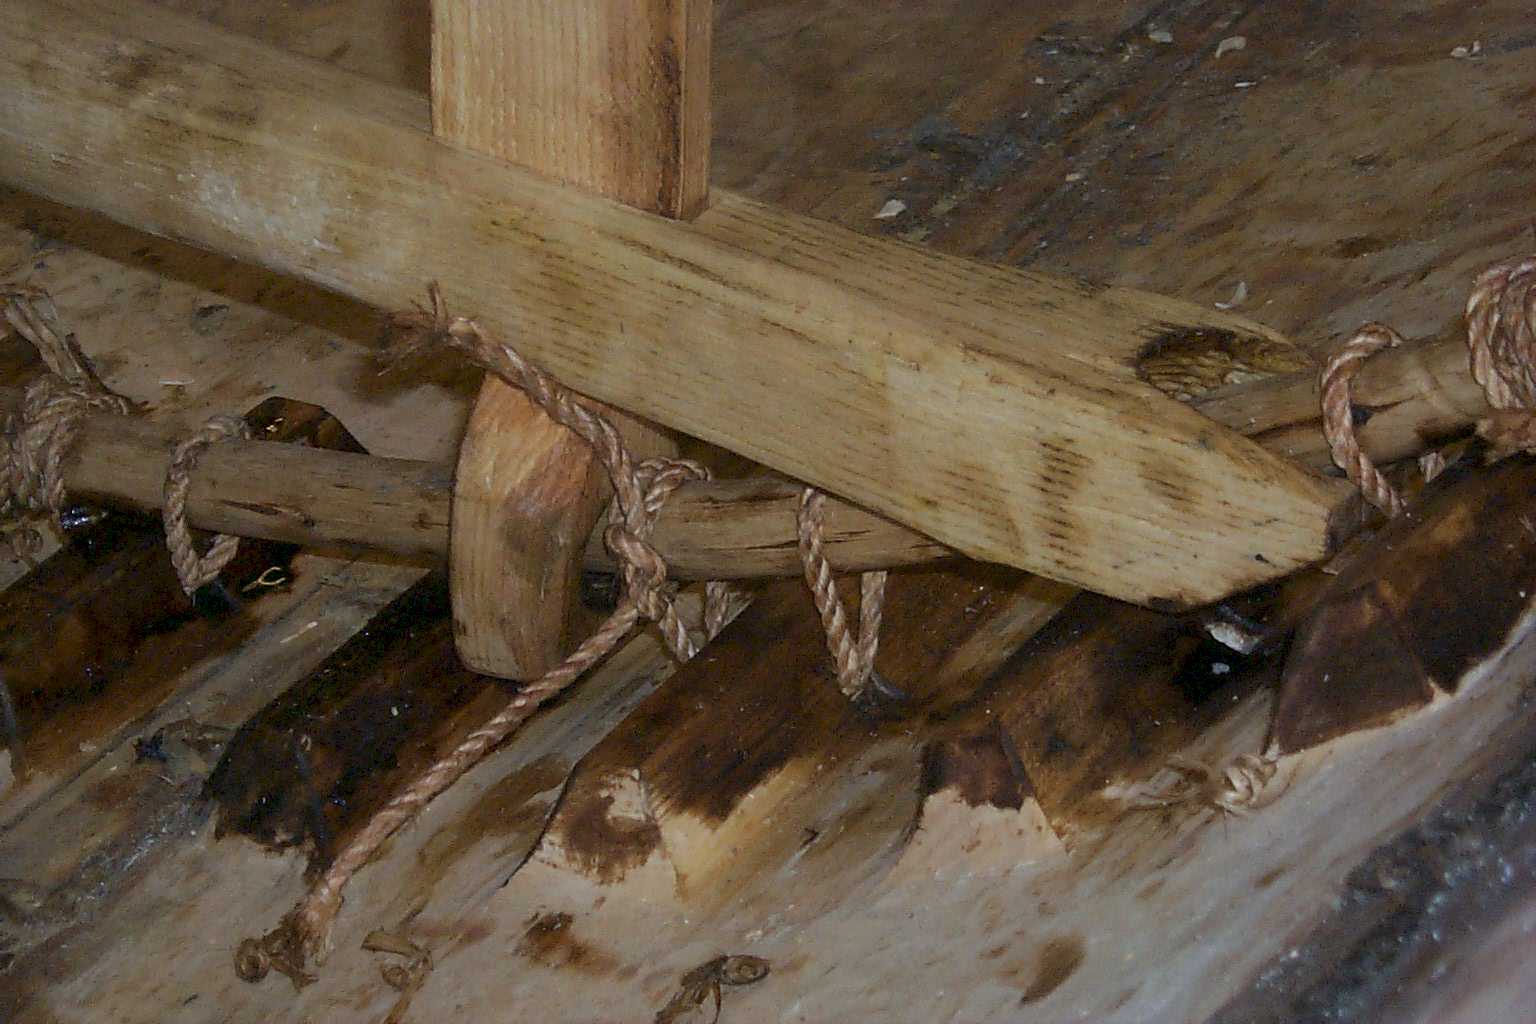 A close-up of a deck-beam - pillar - hazel branch connection.